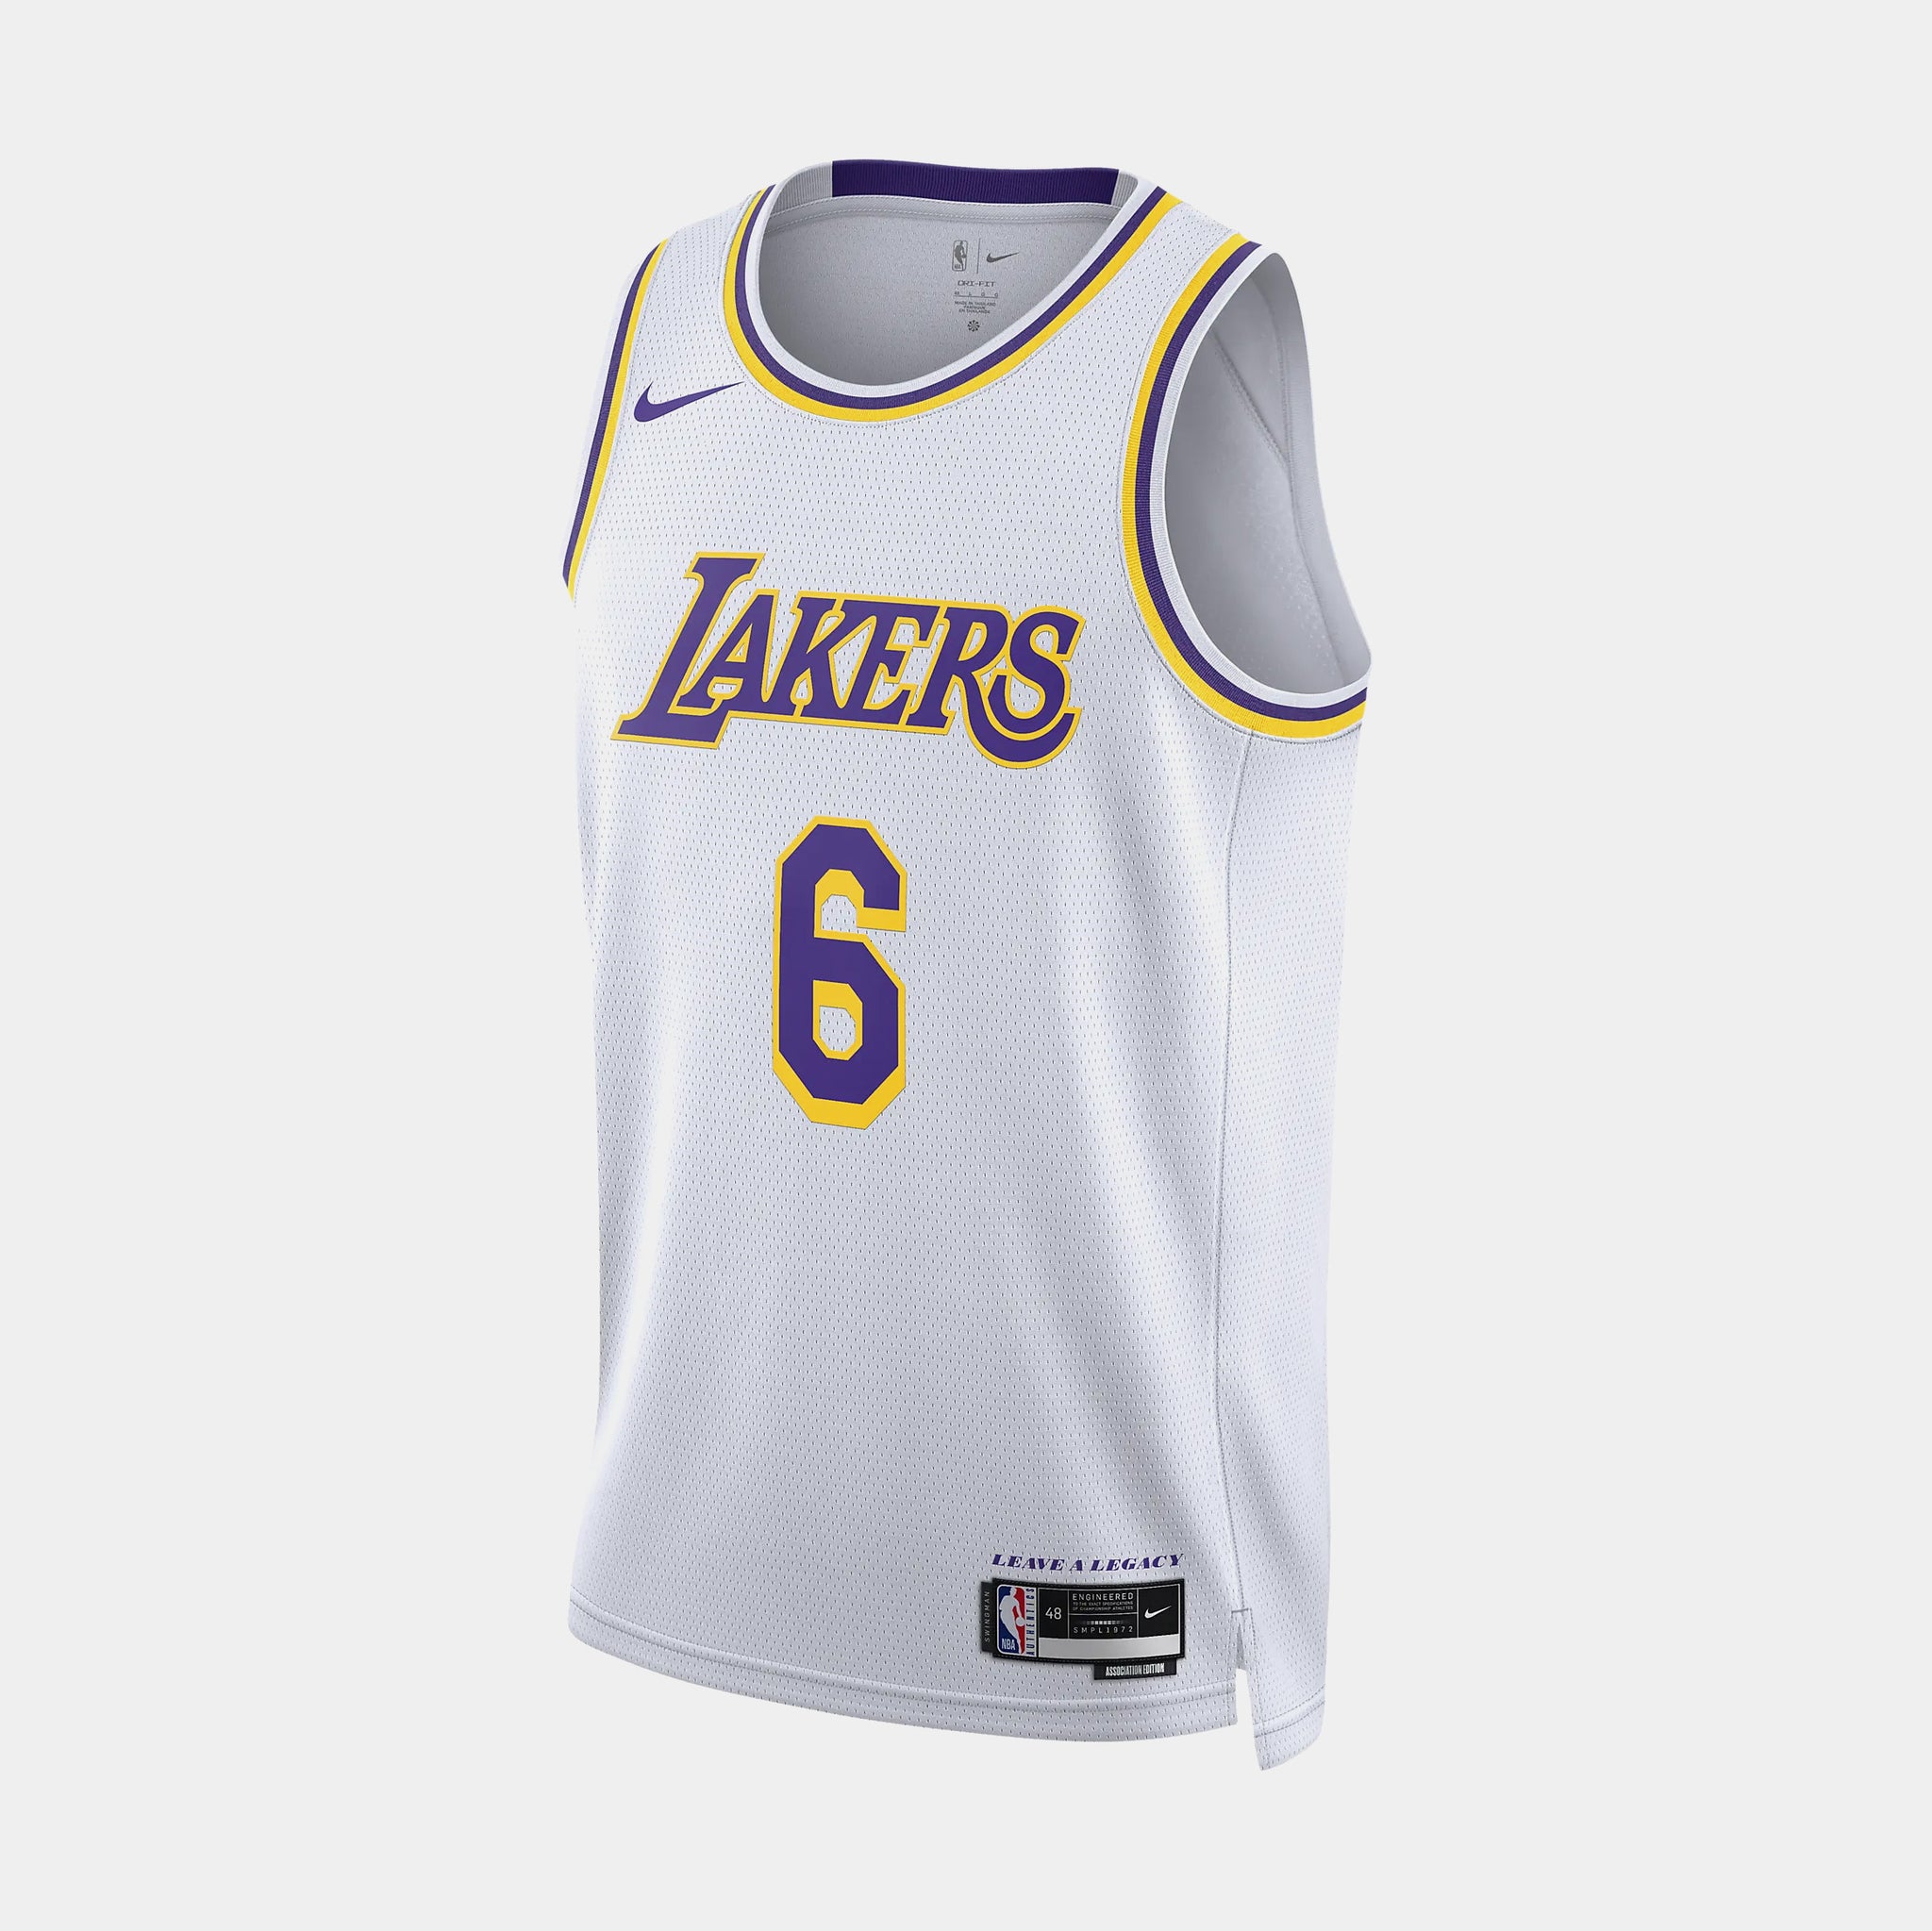 Nike LA Lakers Kobe Bryant Swingman #8 Field Purple Jersey AV3701-504 Sz XL  52